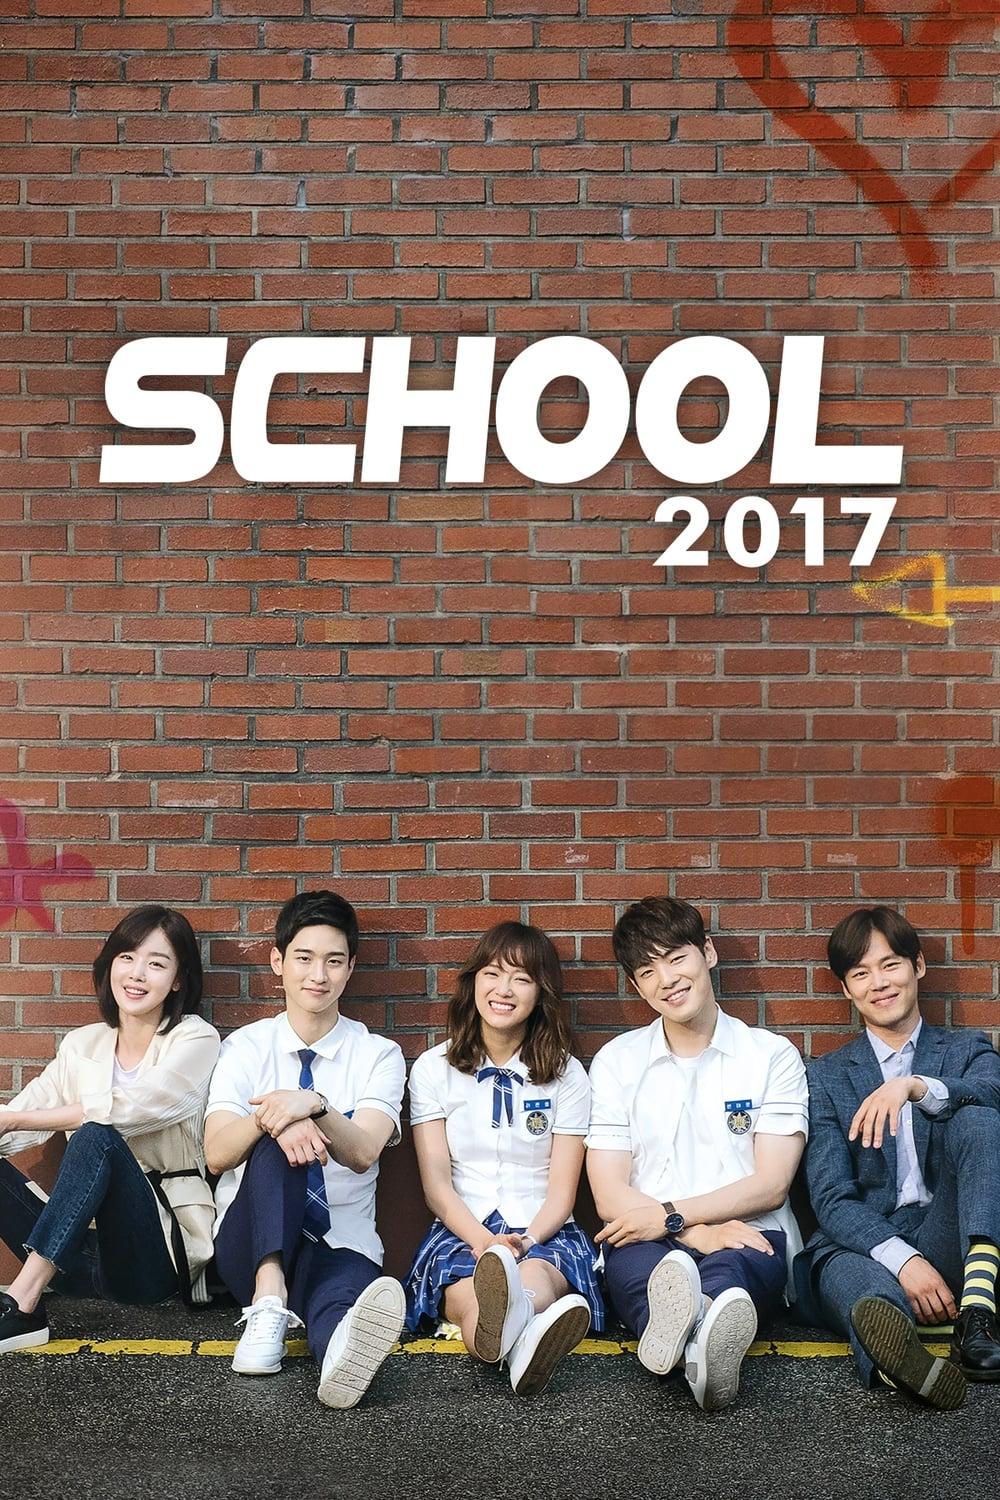 School 2017 poster